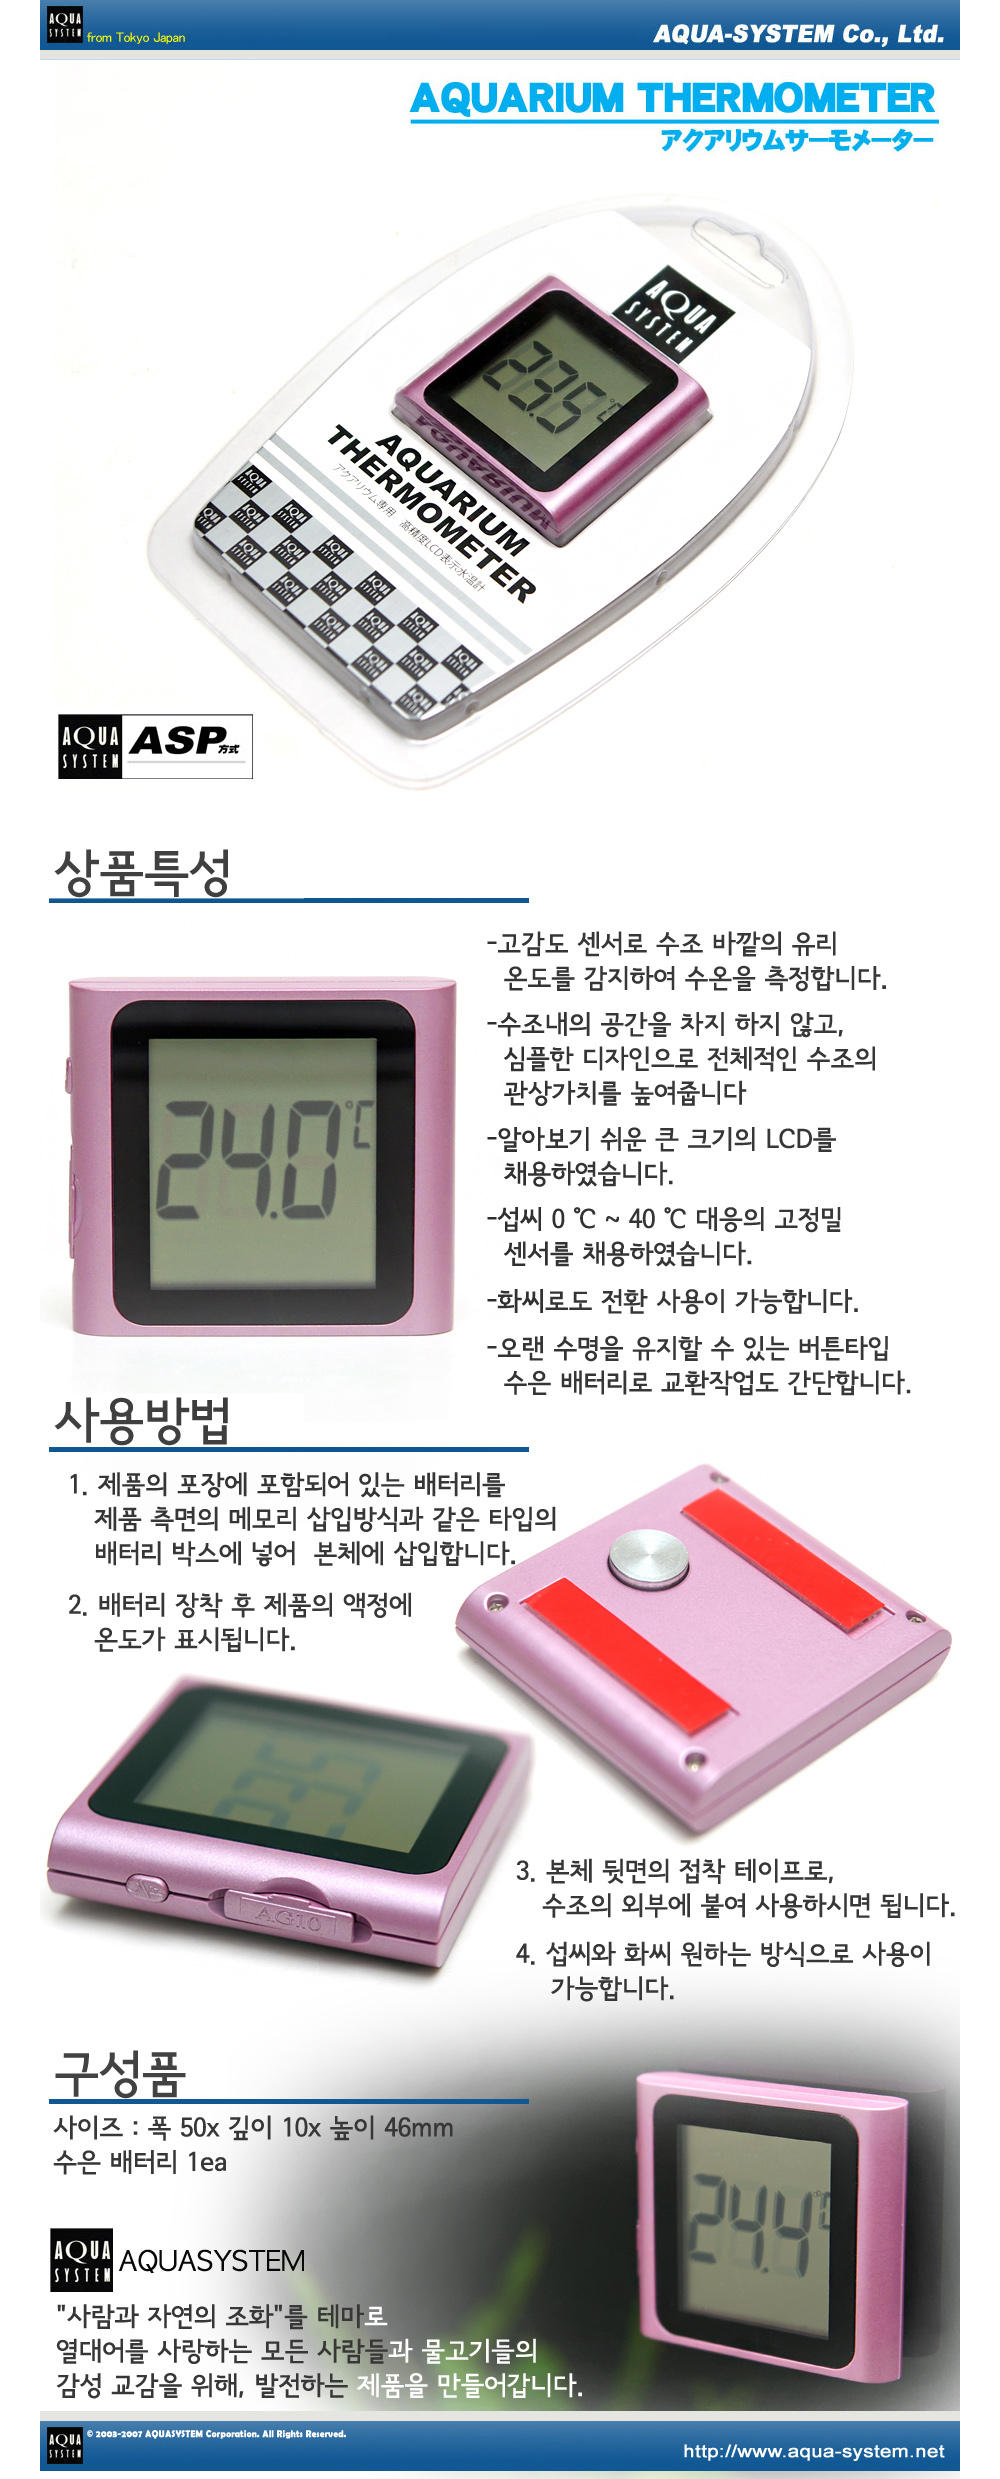 아쿠아시스템 디지털온도계 (핑크) 내용.jpg